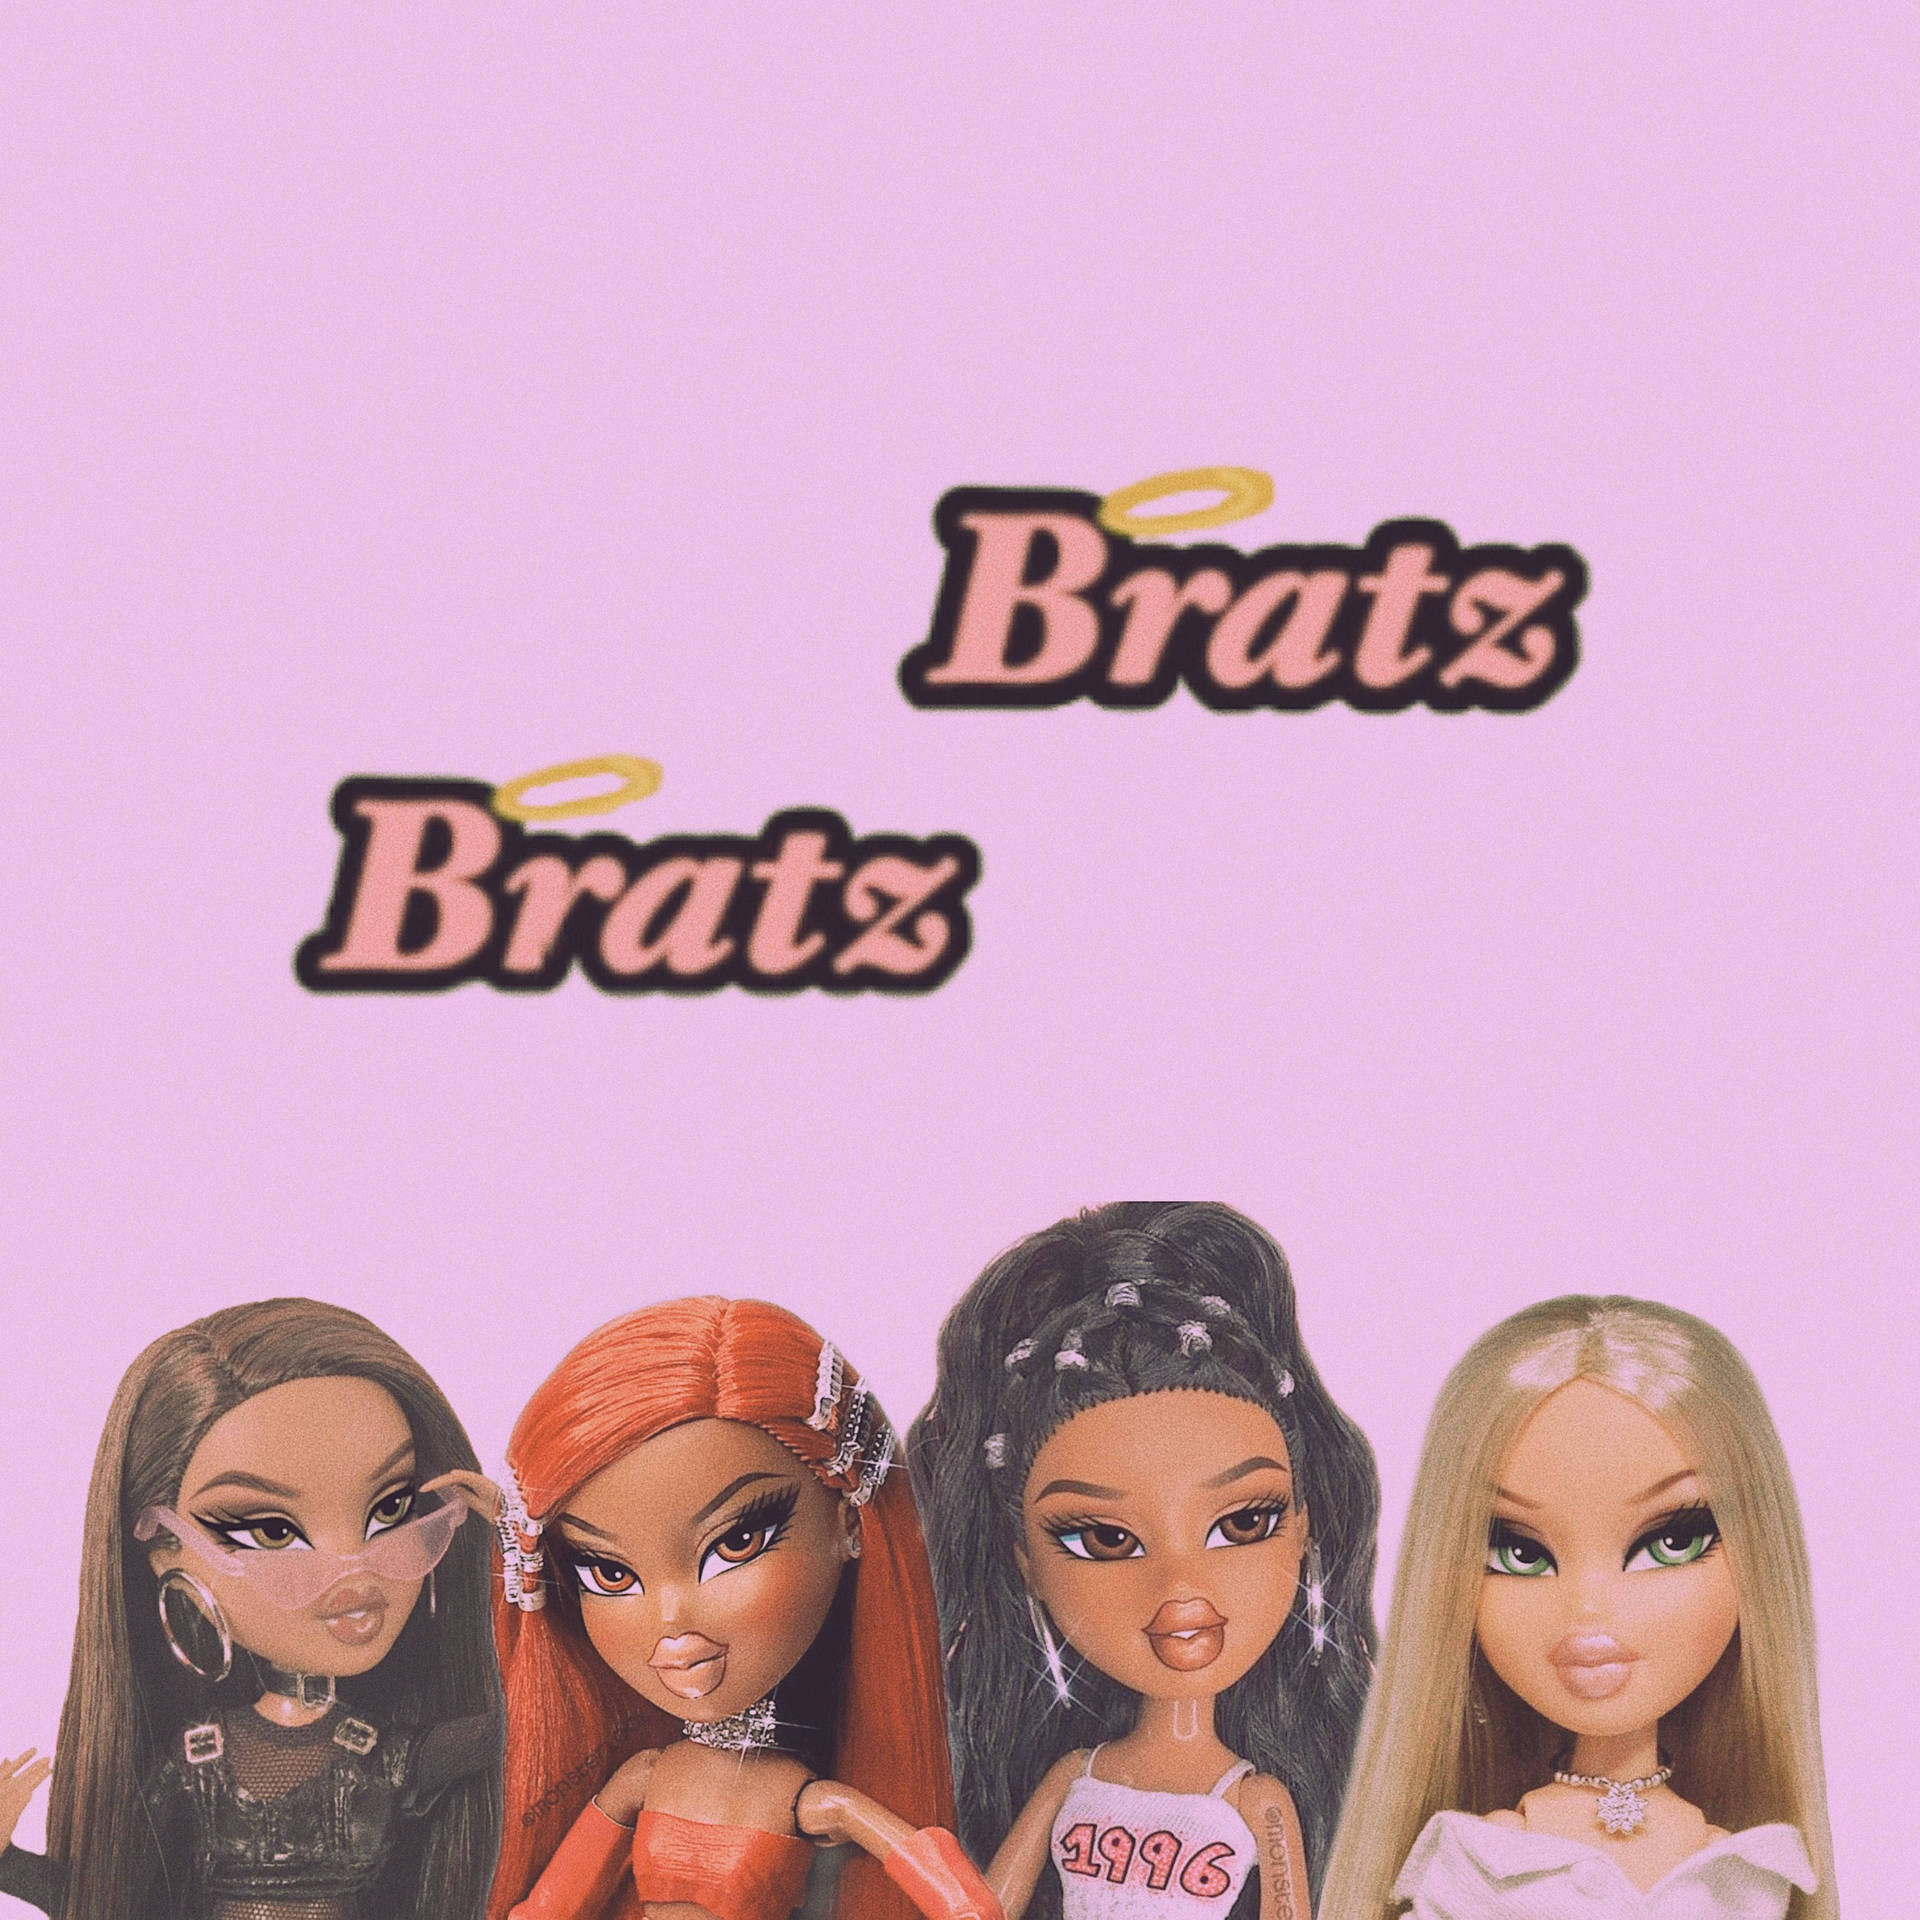 Bratz Dolls Four Different Styles Wallpaper